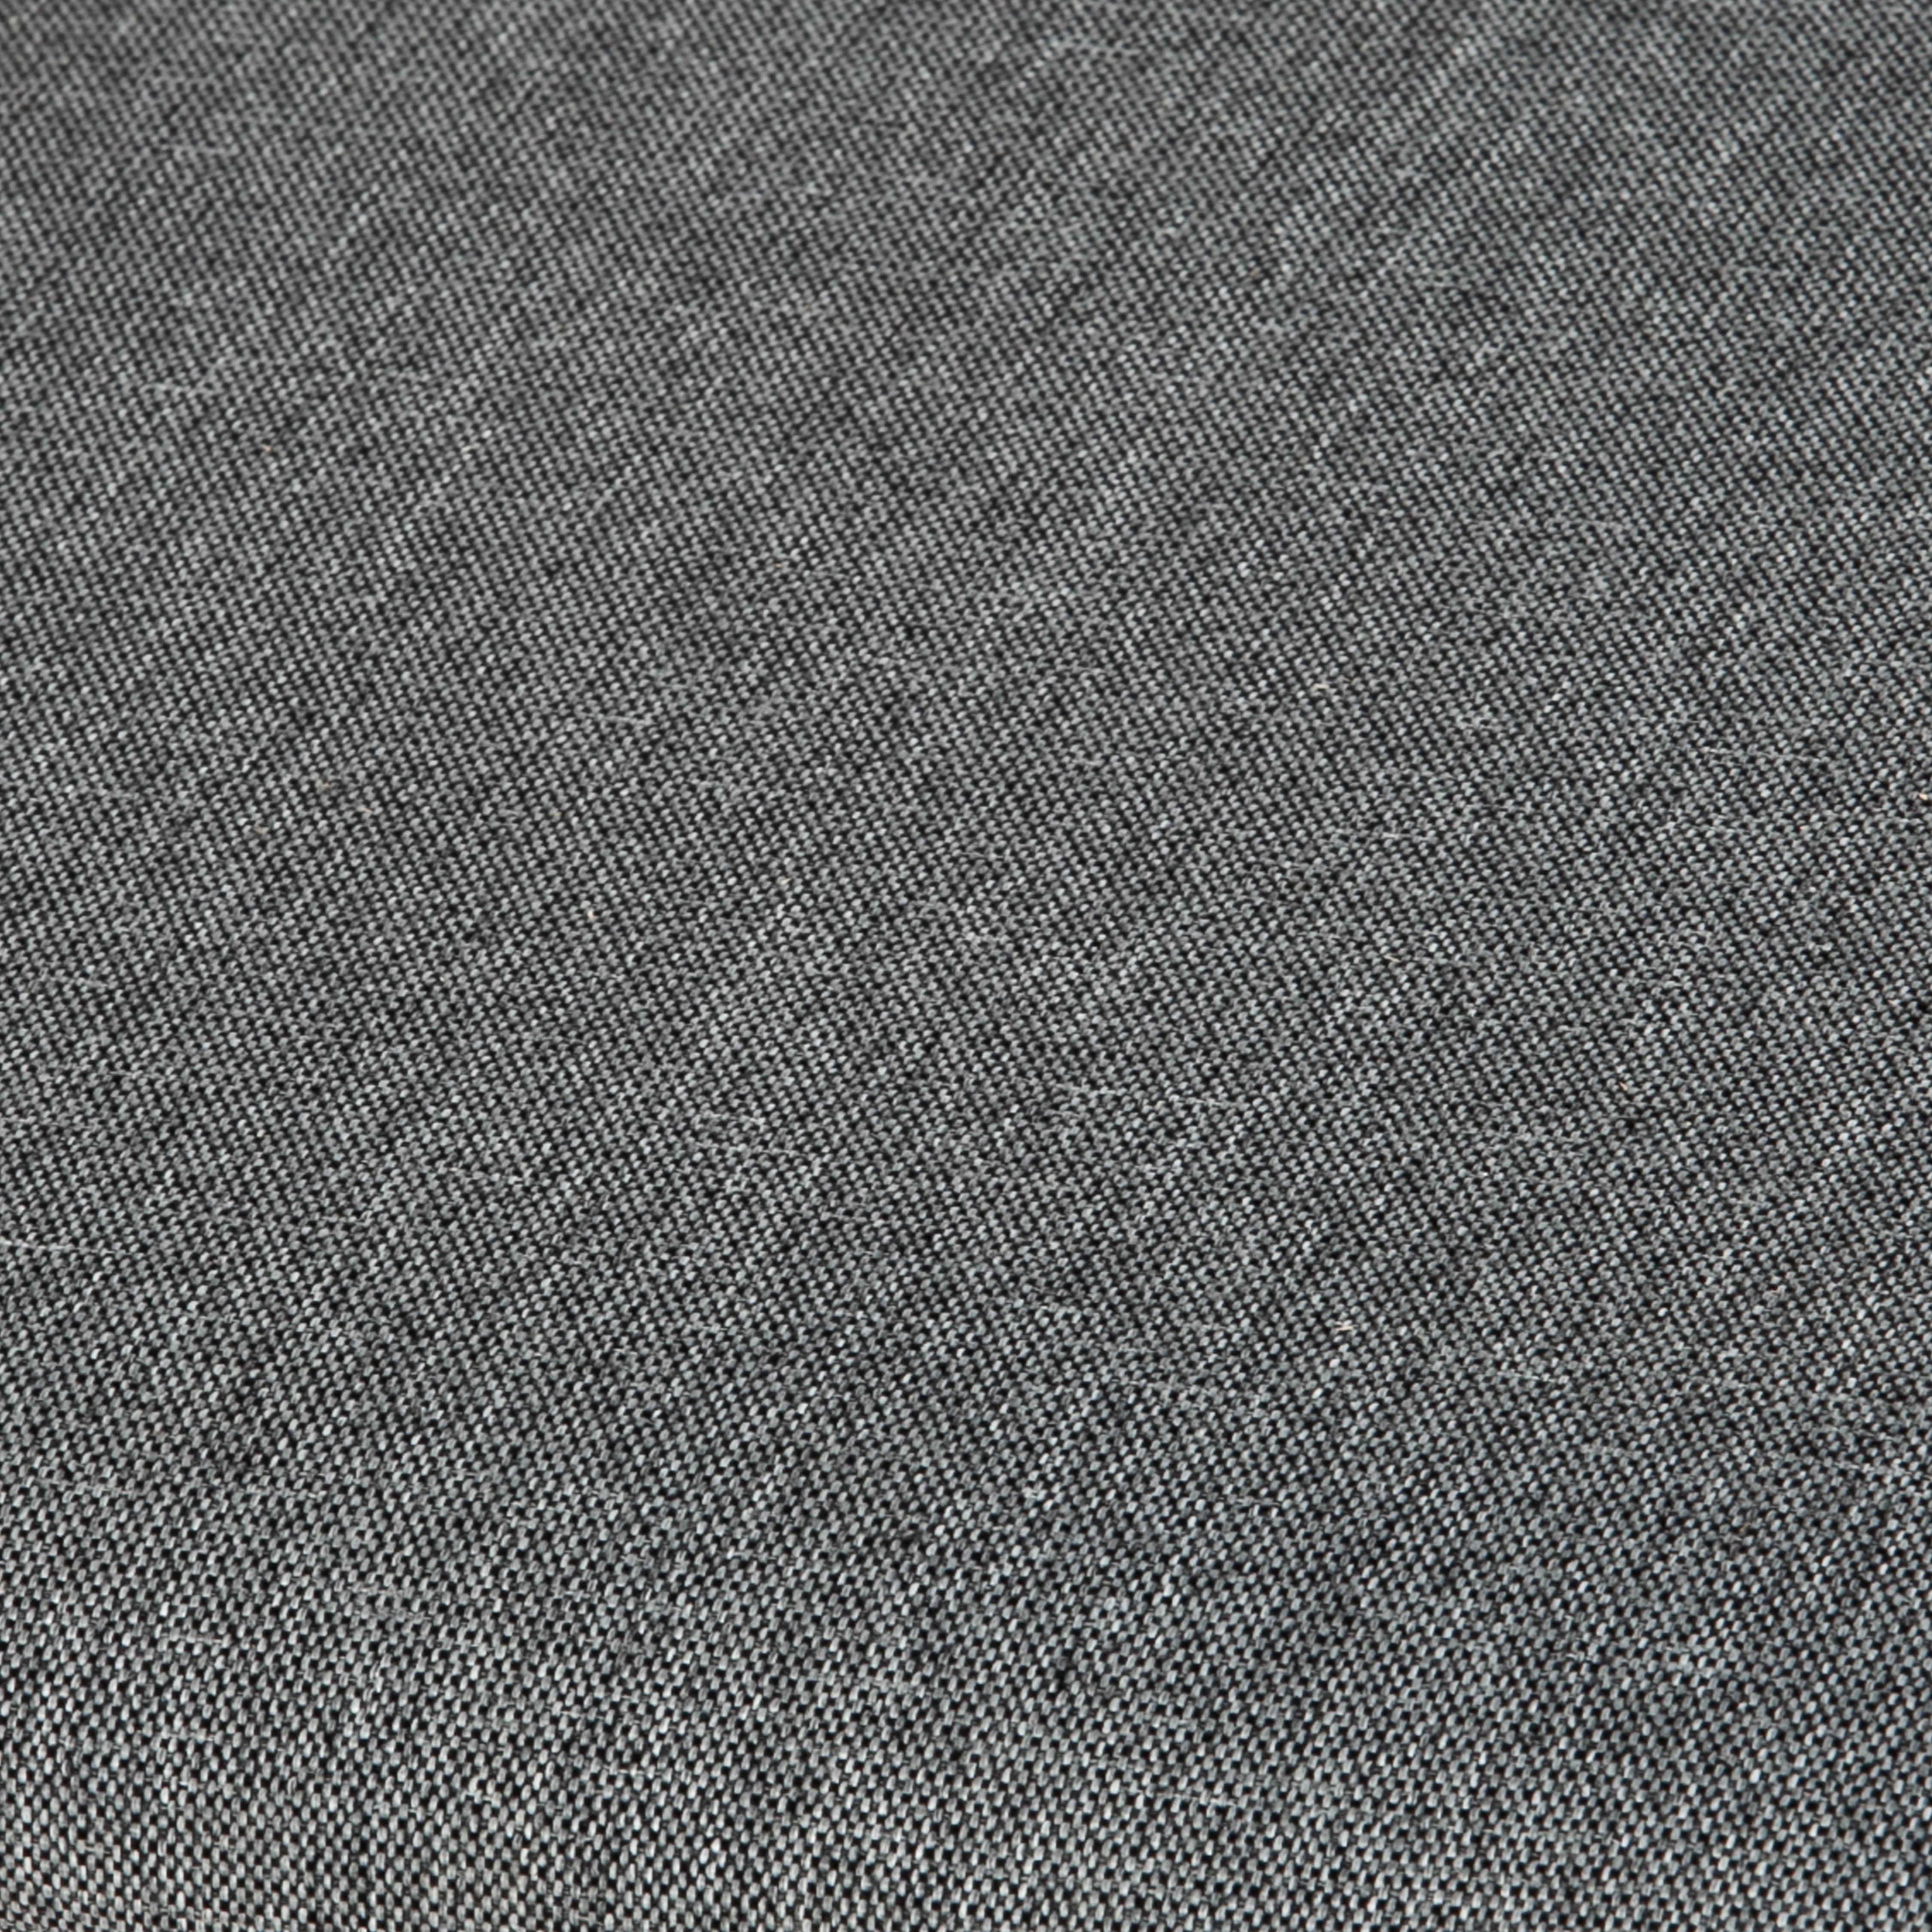 Стул CROSSMAN Многослойная фанера, 100*41*40, white, ткань тёмно-серая (150) разобранный